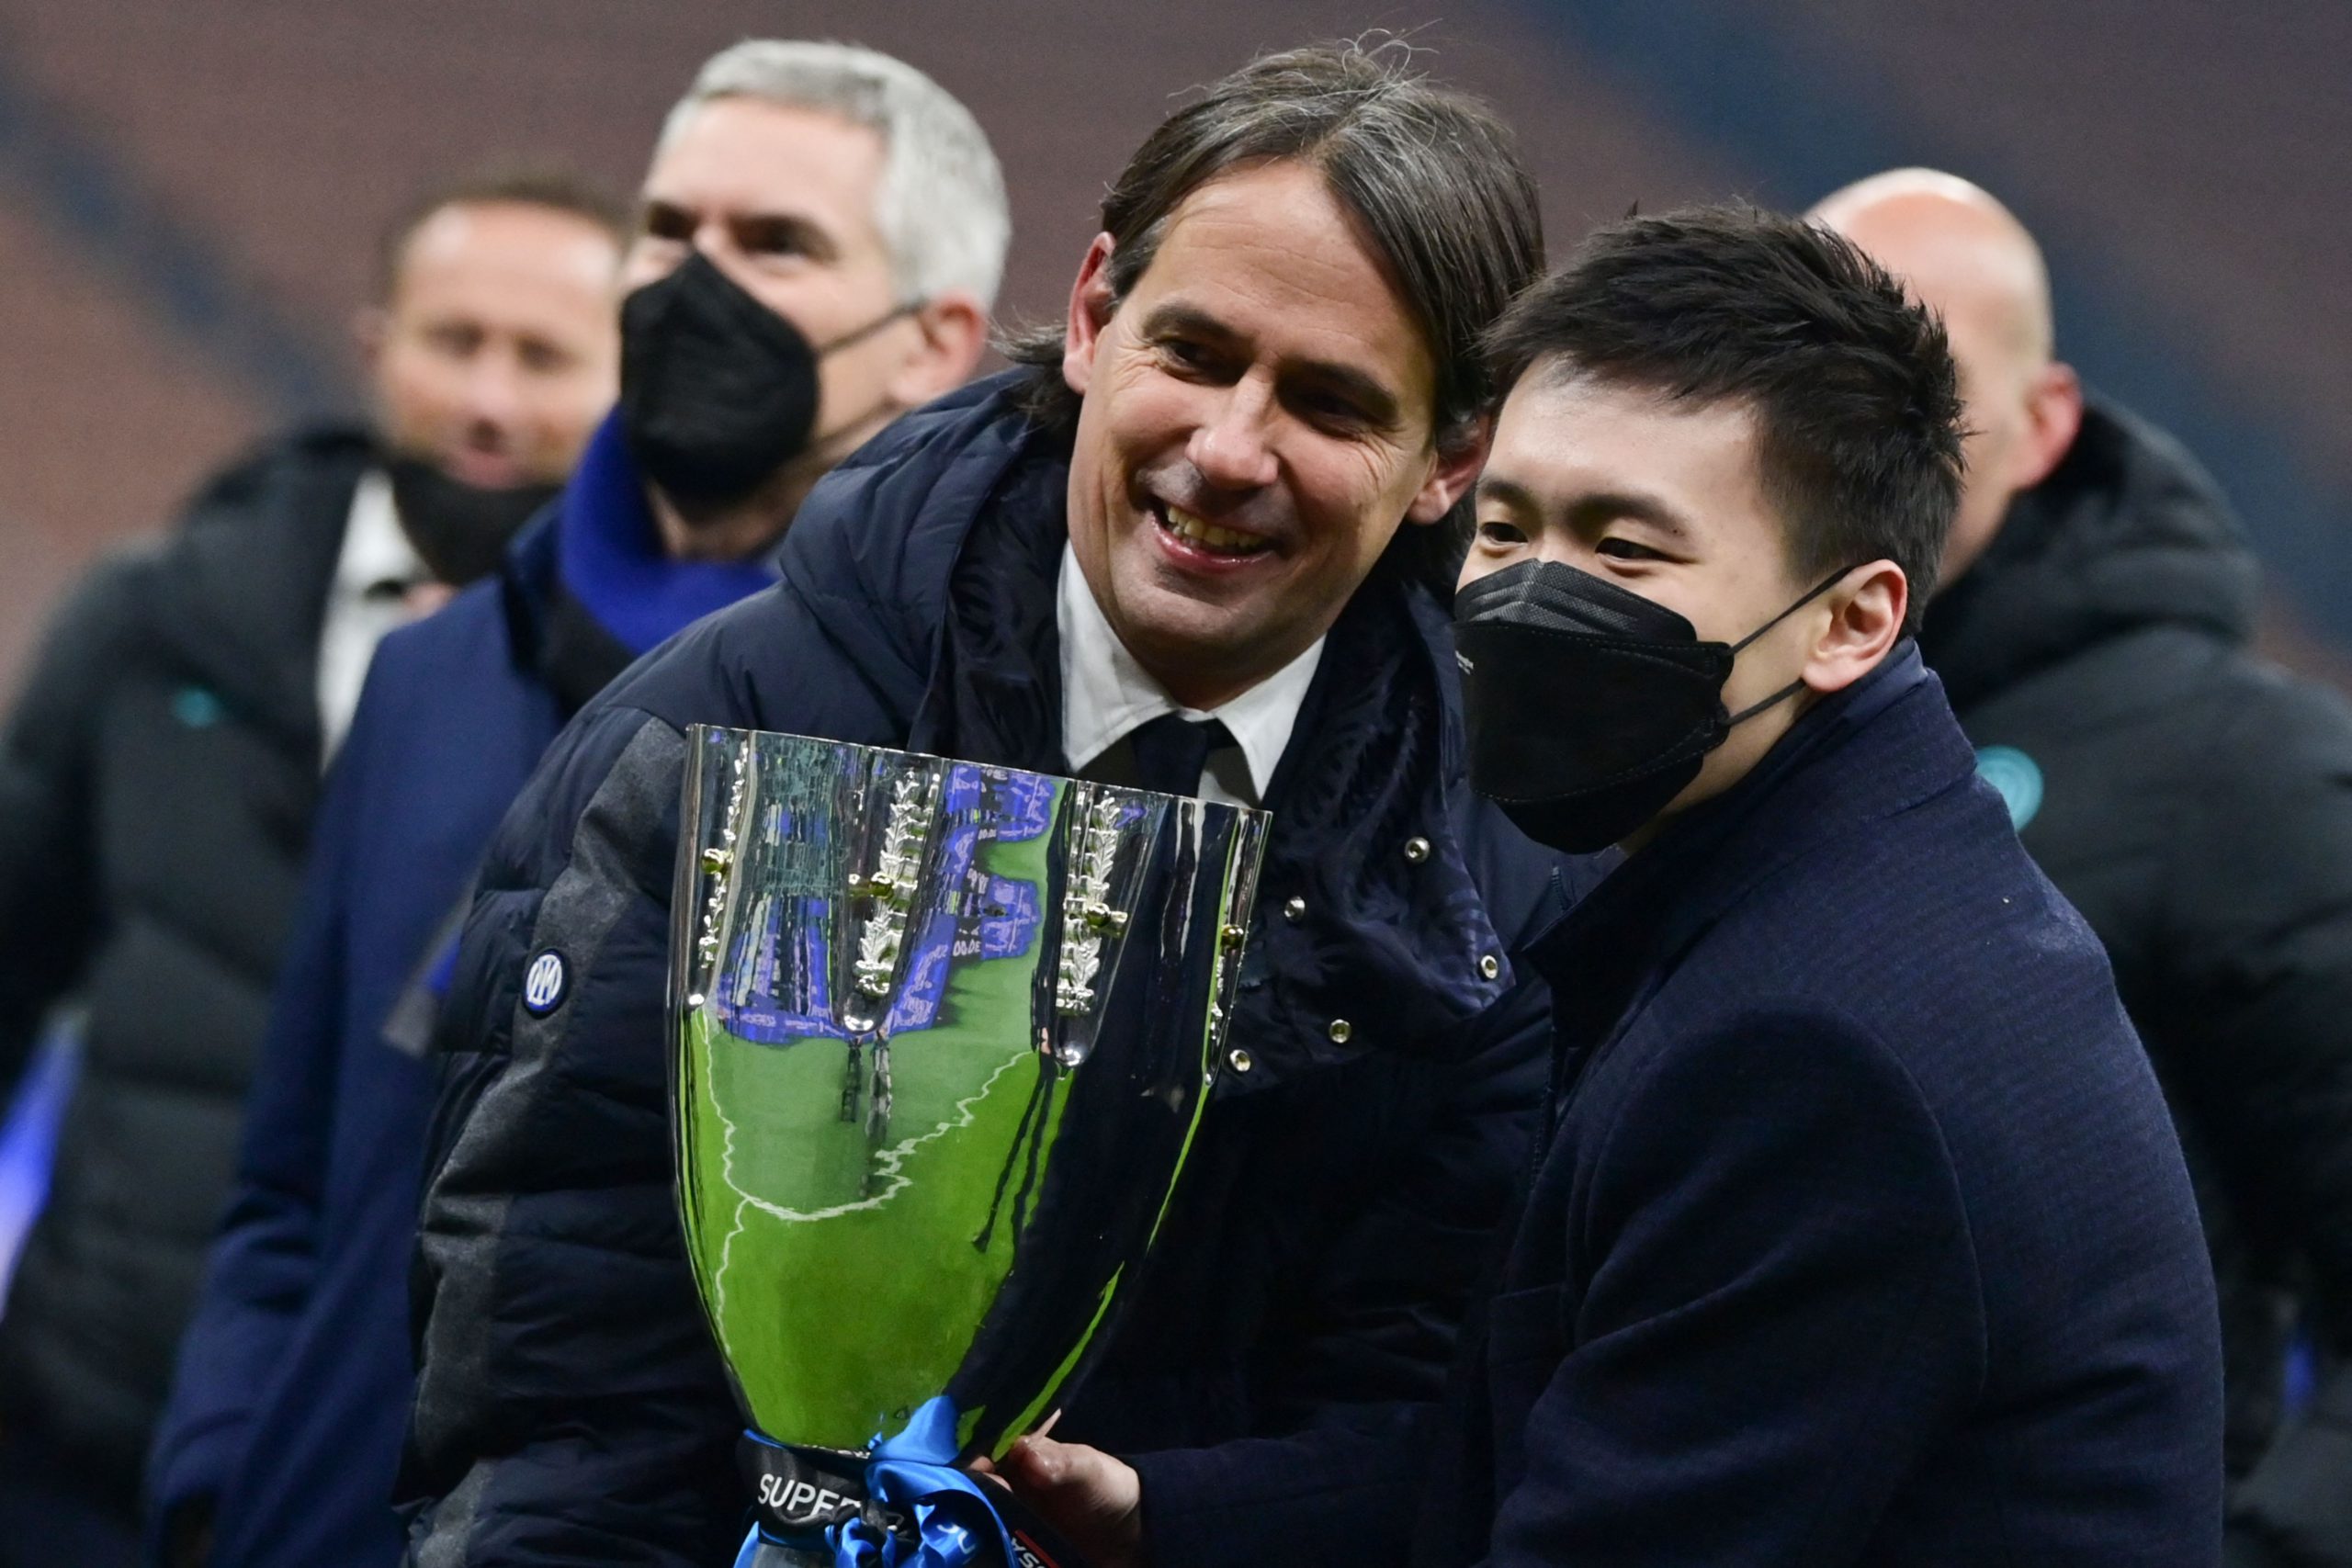 Simone Inzaghi e Steven Zhang dopo Inter-Juventus di Supercoppa Italiana